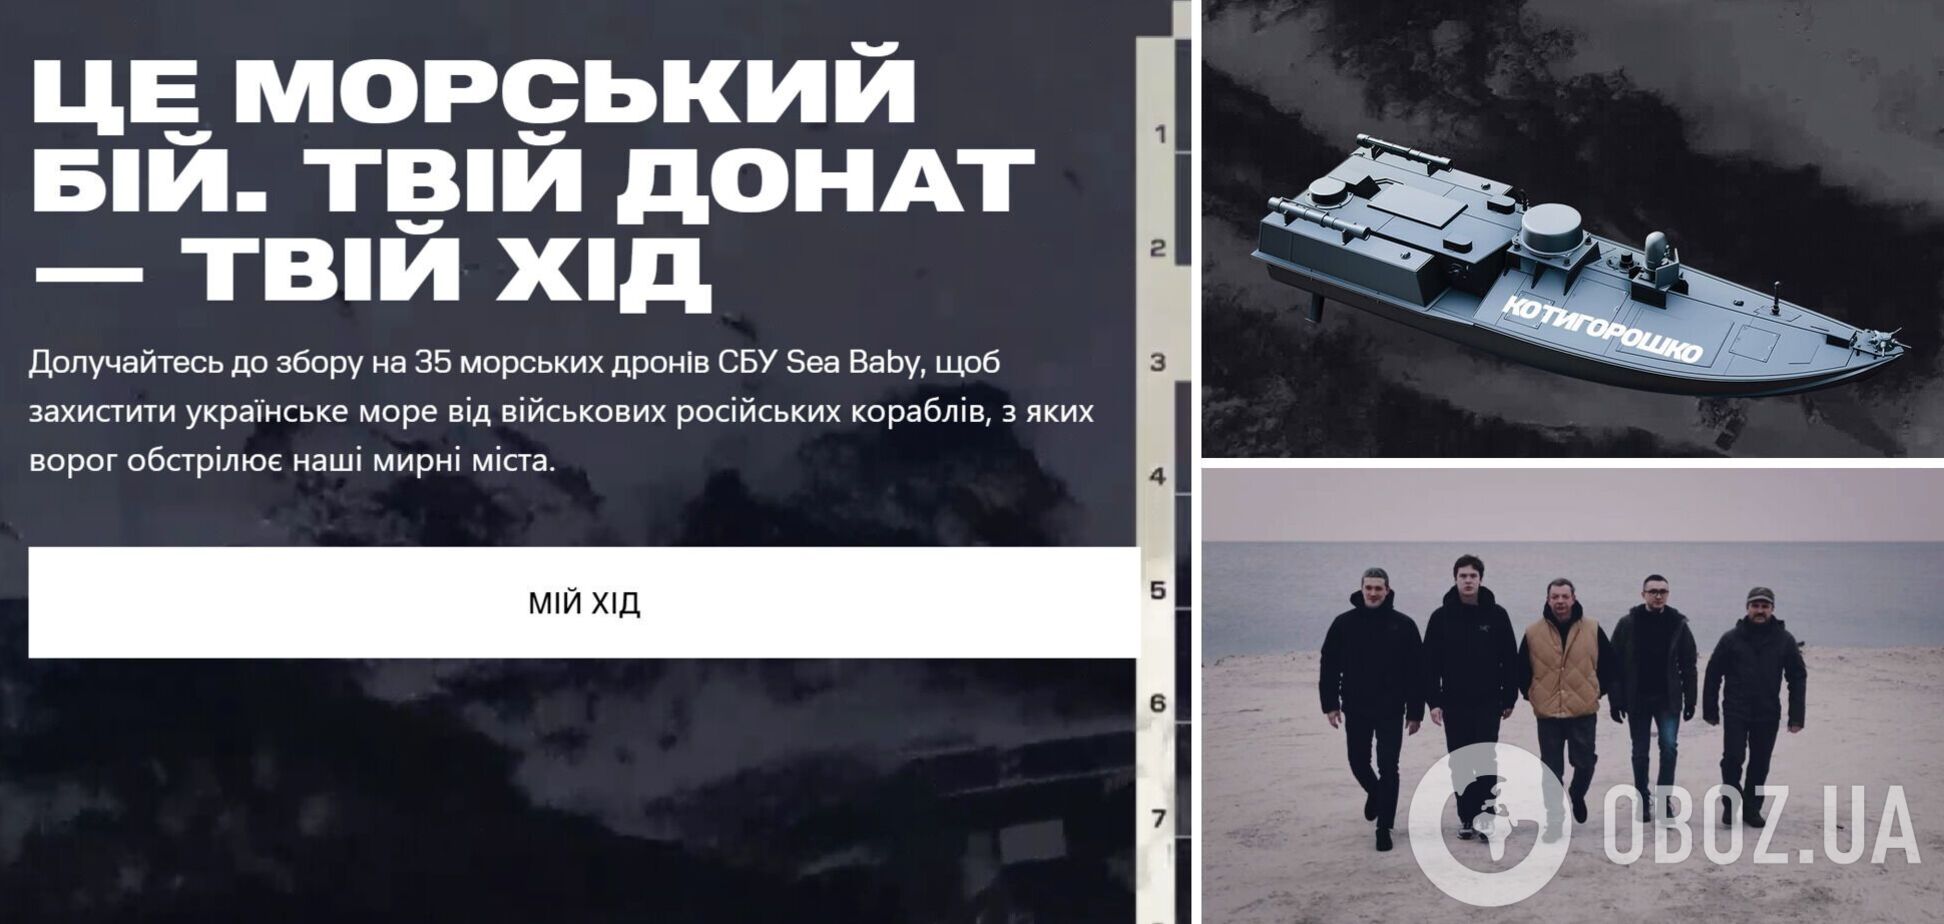 Українців закликали долучитись до збору на 35 морських дронів СБУ Sea Baby: операції з ними змінили розклад сил у морі 